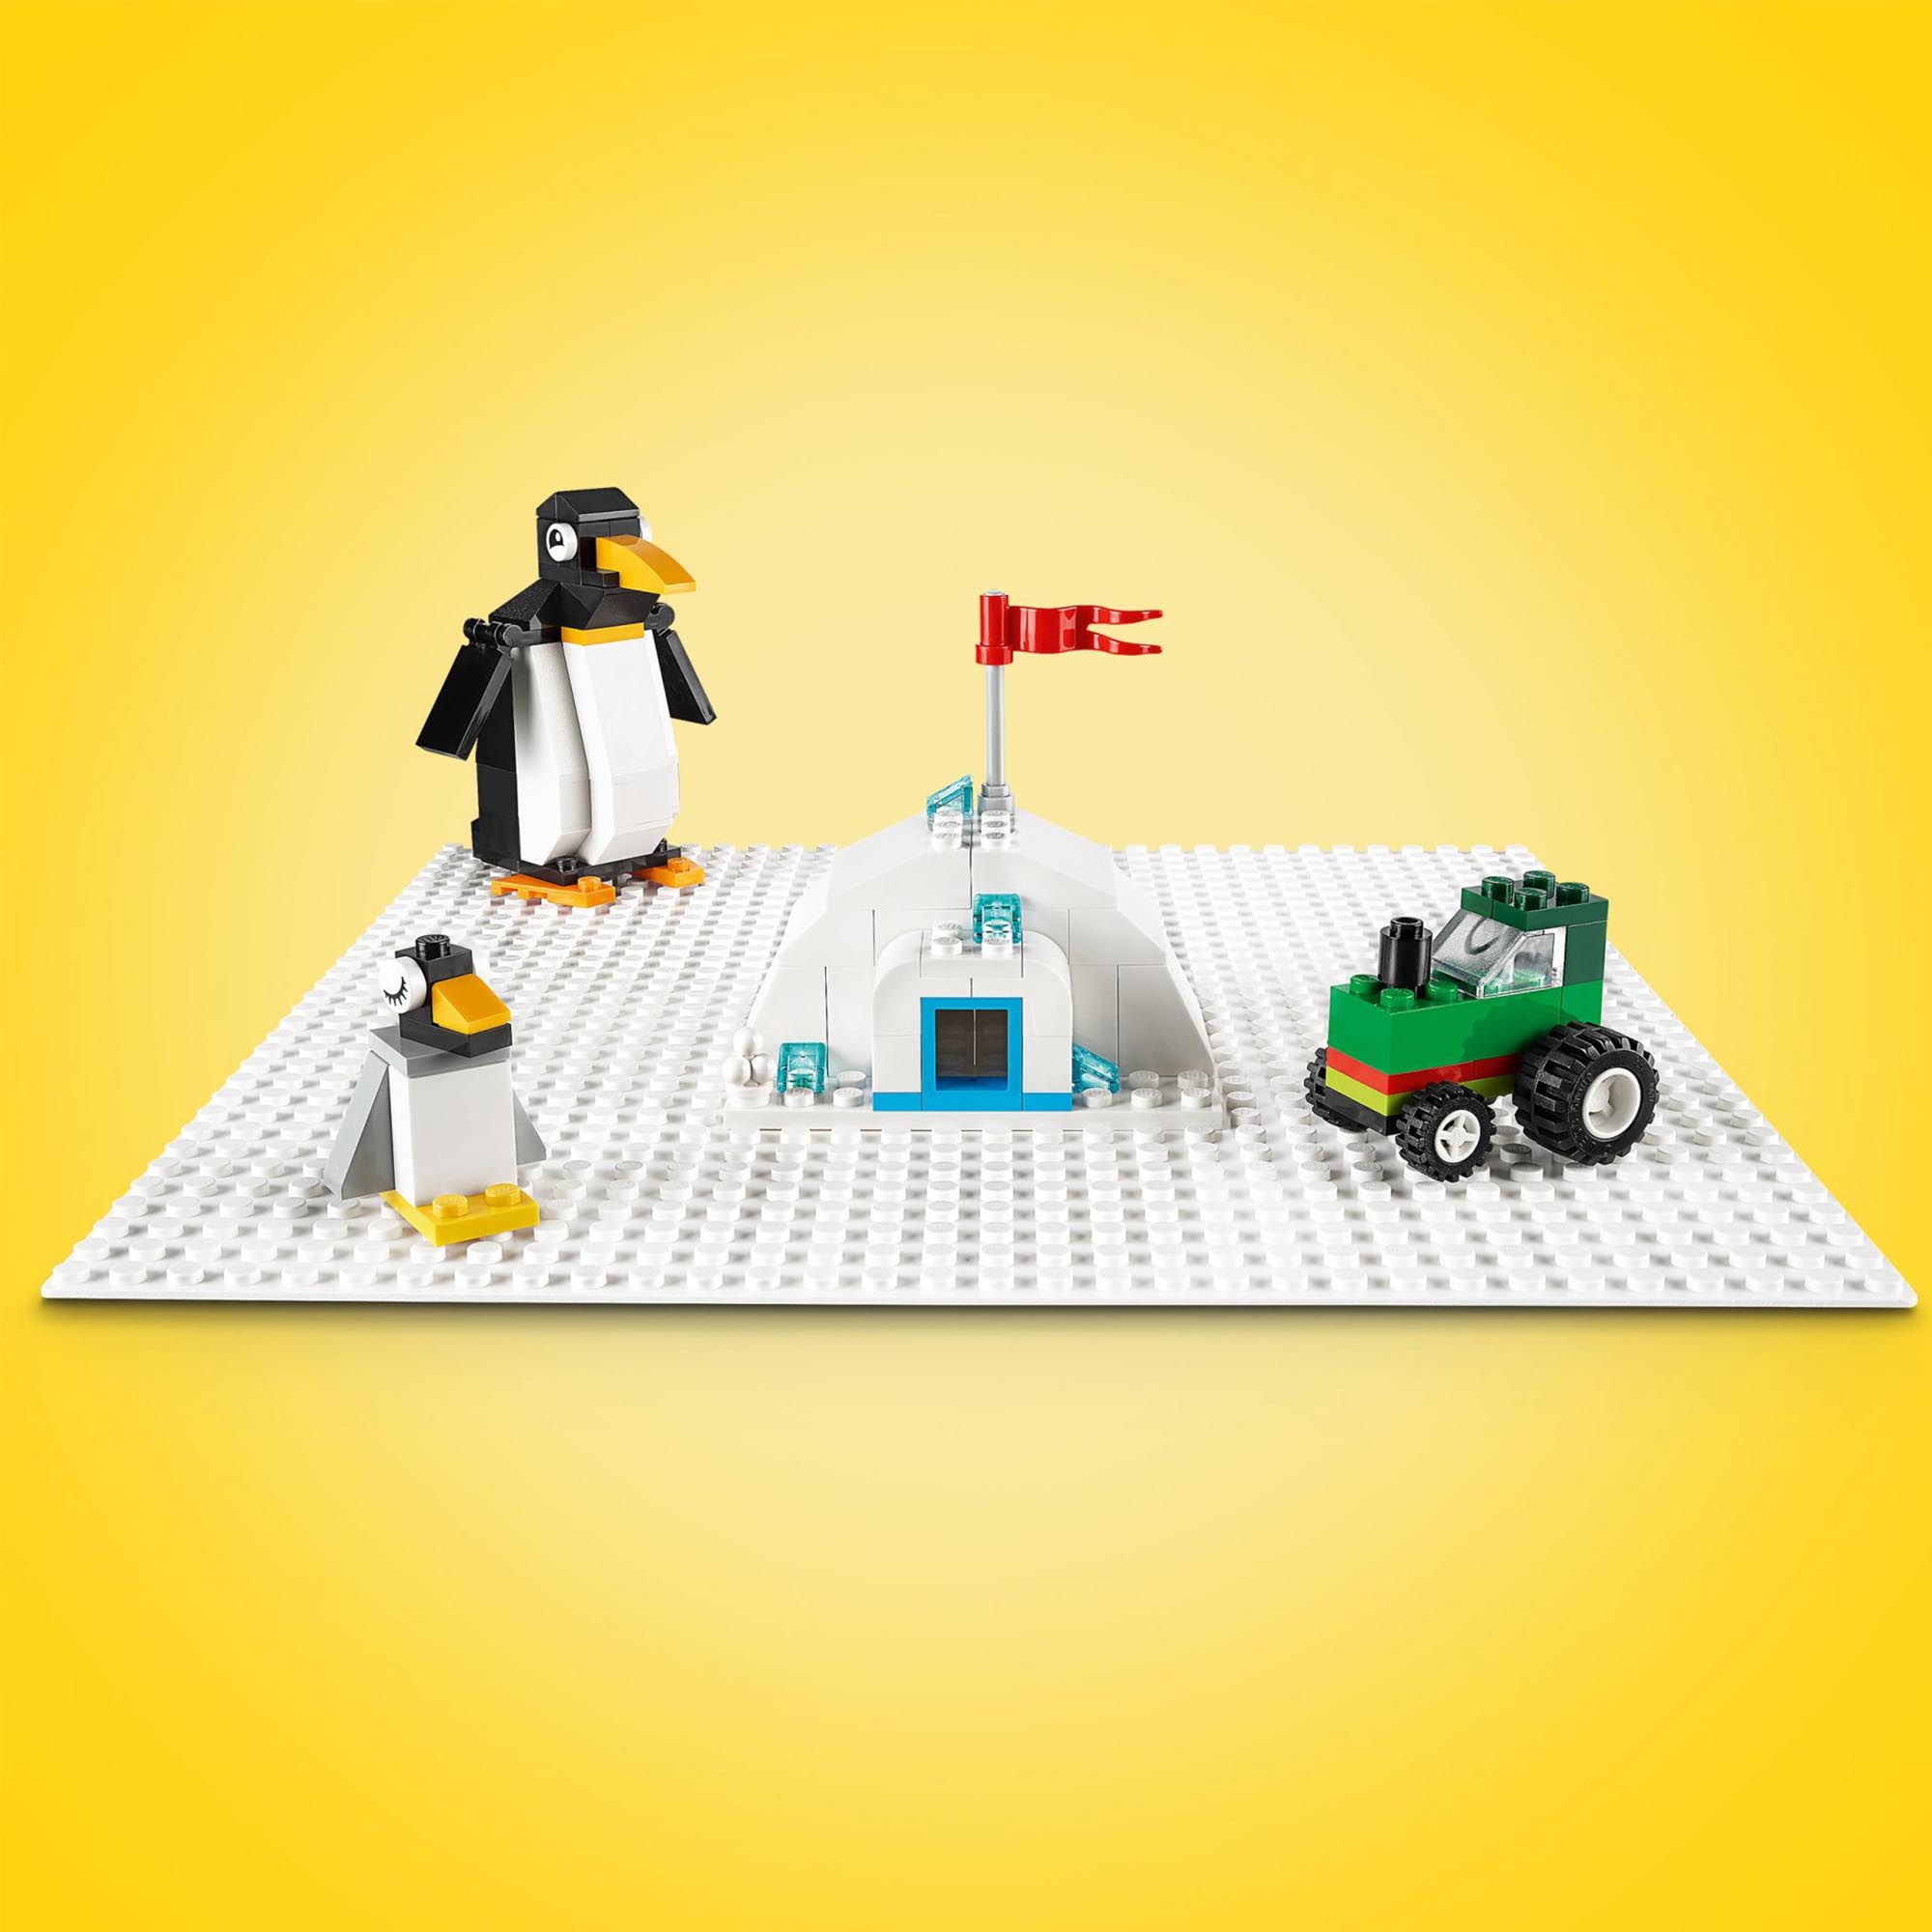 LEGO Classic Base Bianca, Tavola per Costruzioni Quadrata con 32x32 Bottoncini,  11026, , large